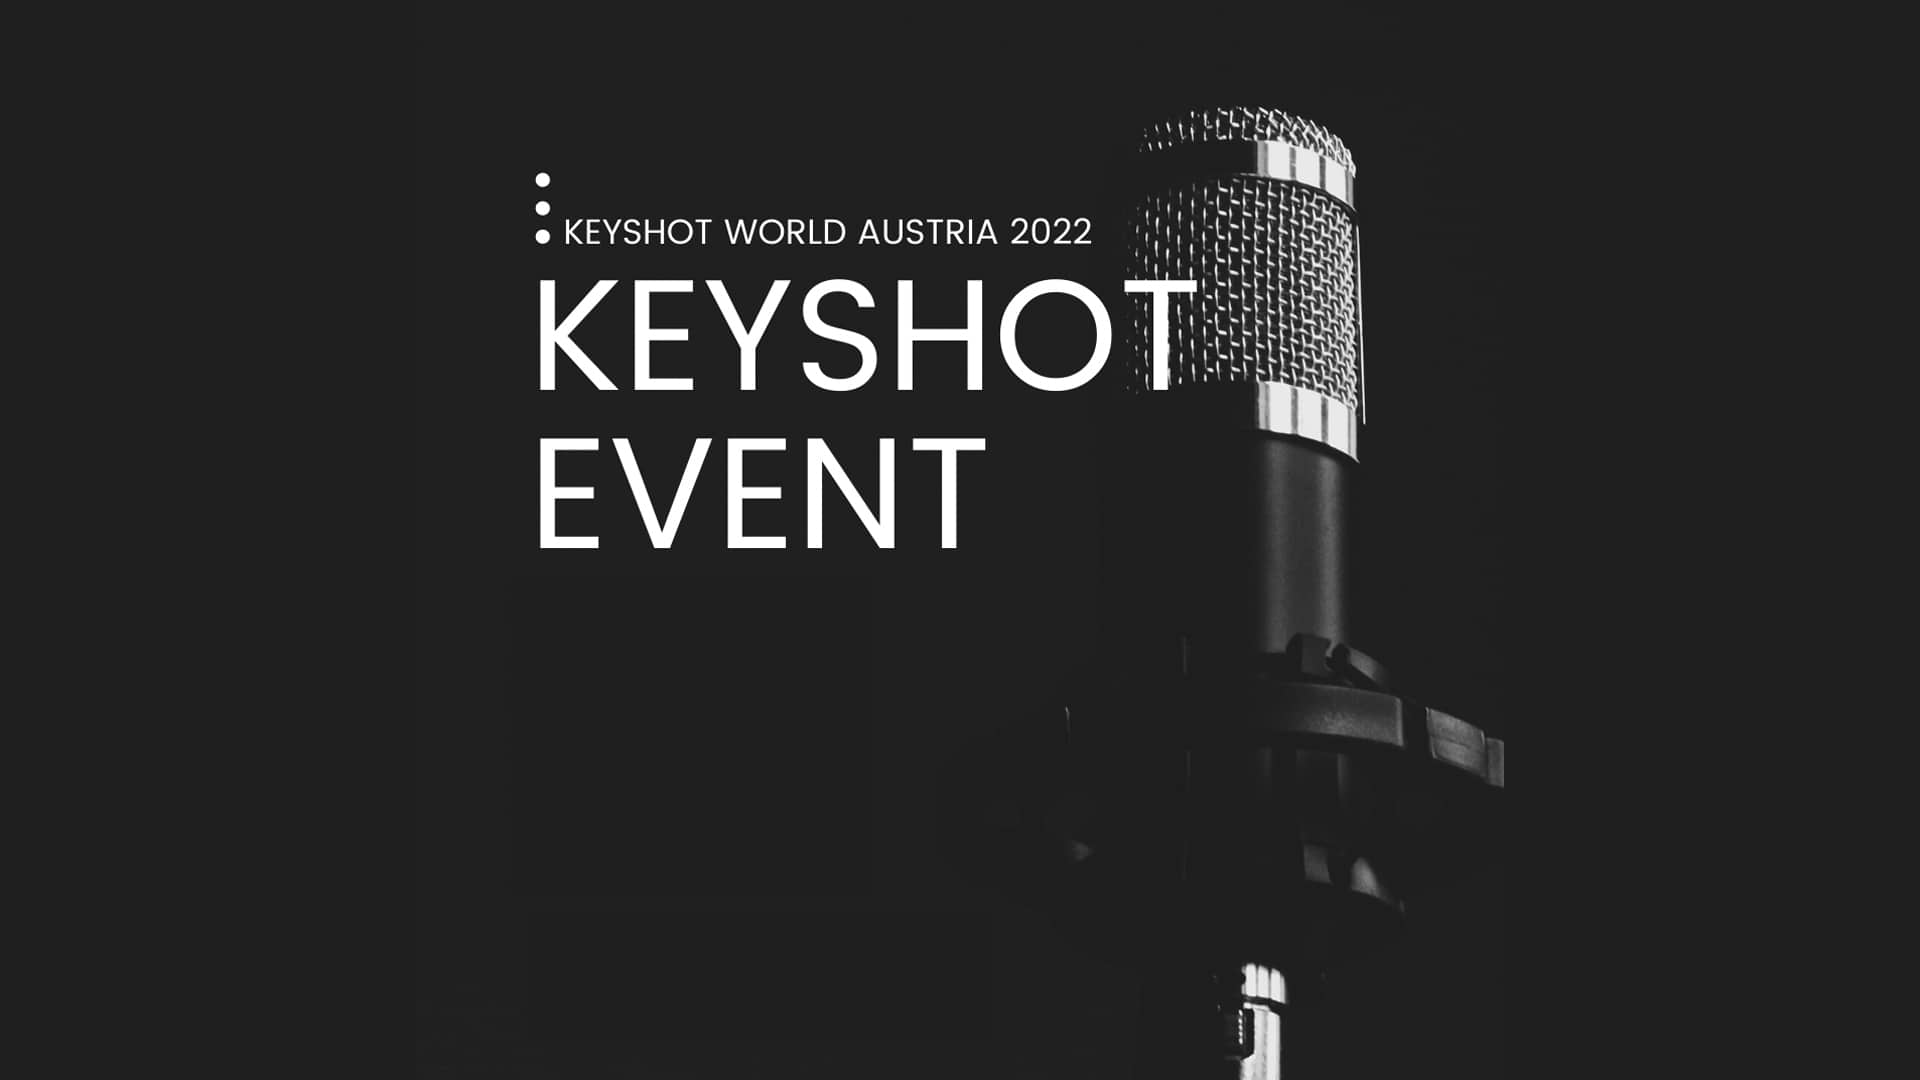 KeyShot World 2022 Austria